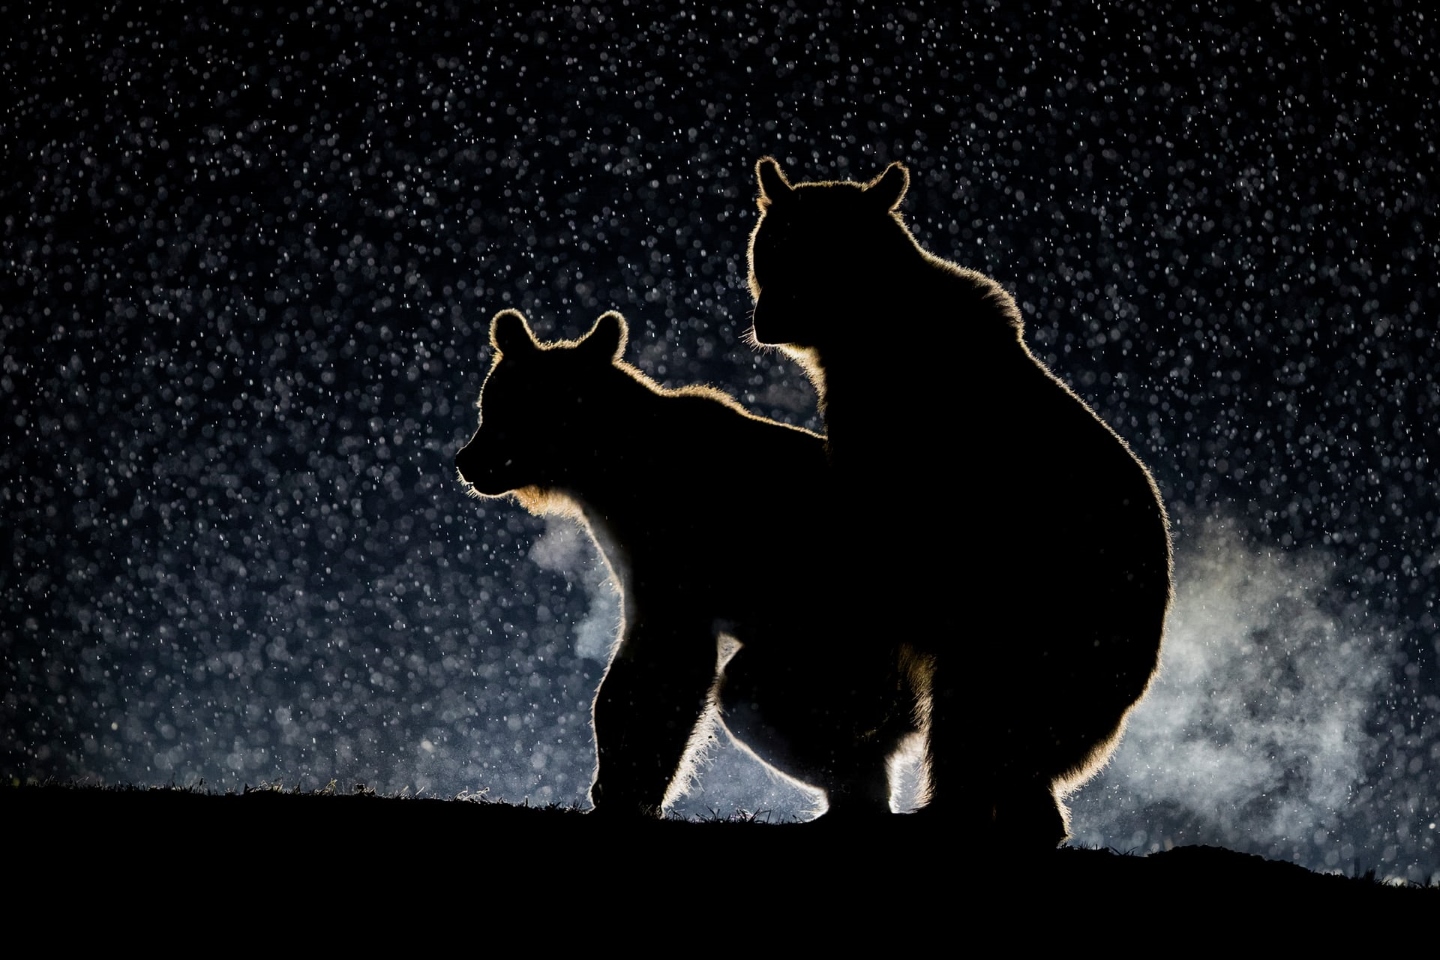 "Любовь под звездами. Пойманы с поличным". Пара медведей рэнди наслаждается не столь-секретным ночным весельем в снегу под силуэтом лунного света. Фотография была сделана Бенсом Маттом в графстве Харгита, Румыния. Фото: Bence Mate